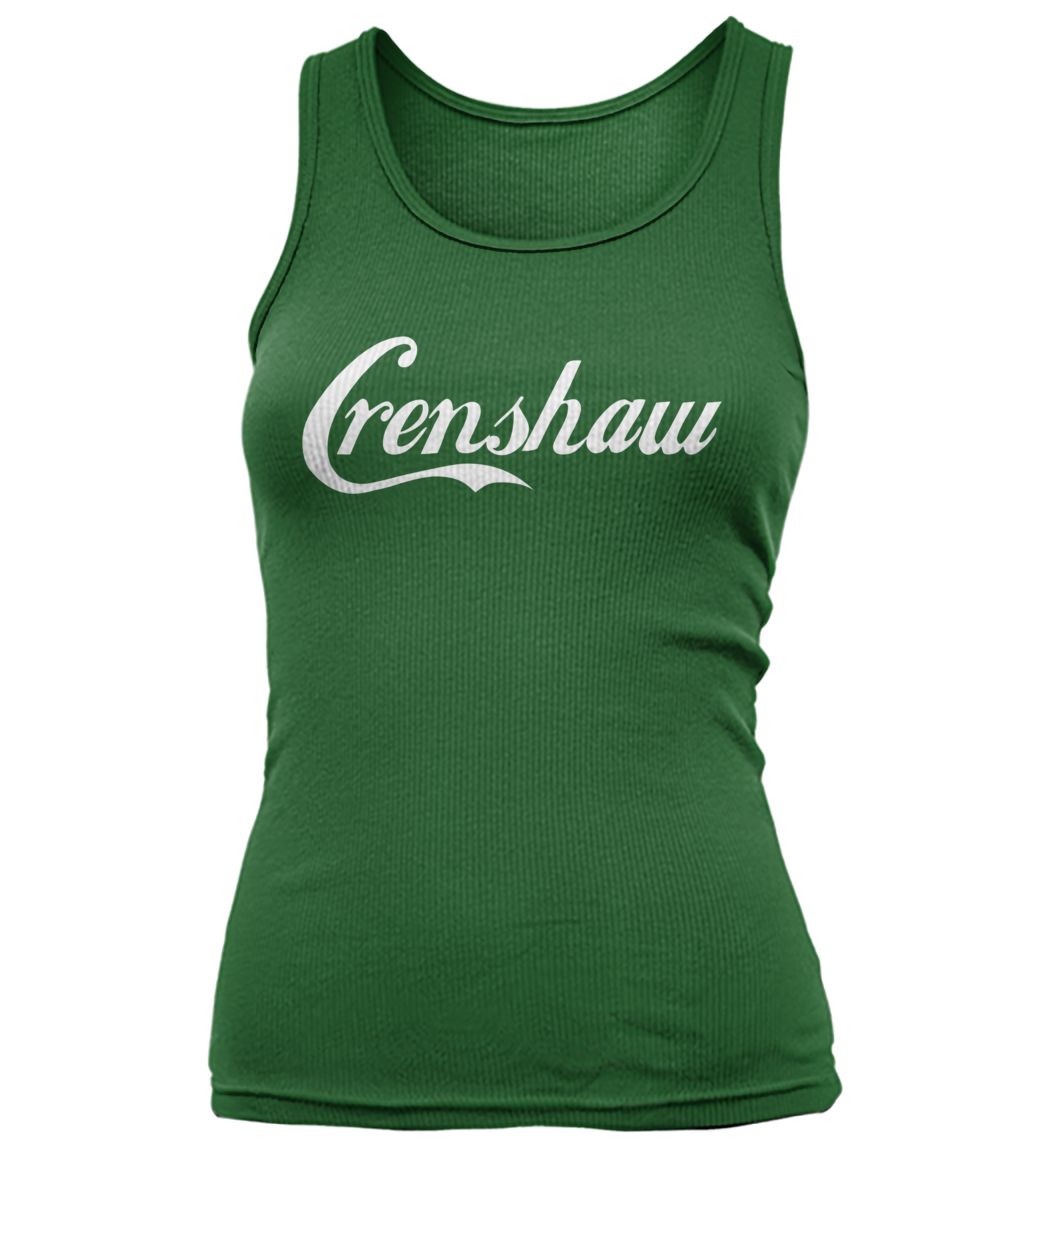 Crenshaw cali california women's tank top